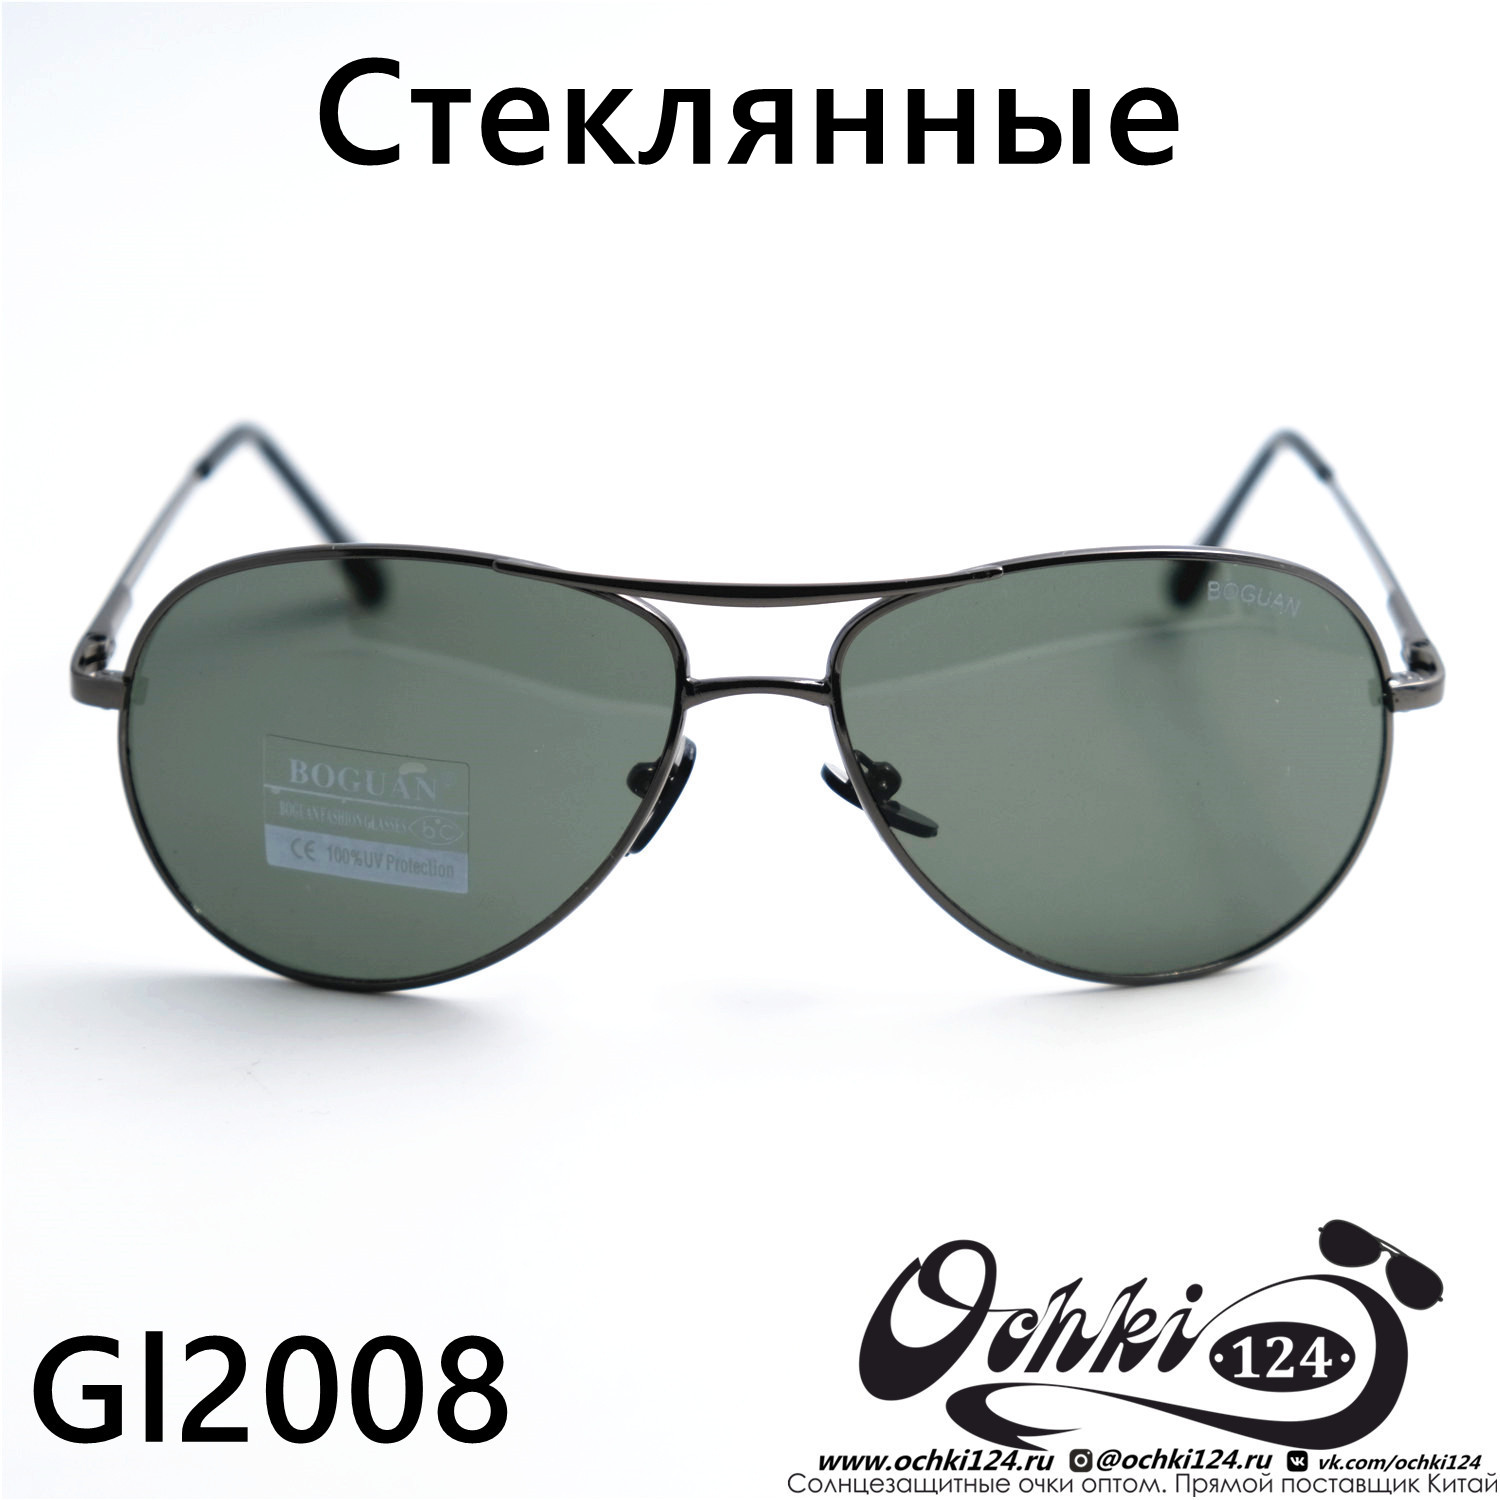  Солнцезащитные очки картинка 2023 Мужские Авиаторы Boguan 2008-C3 